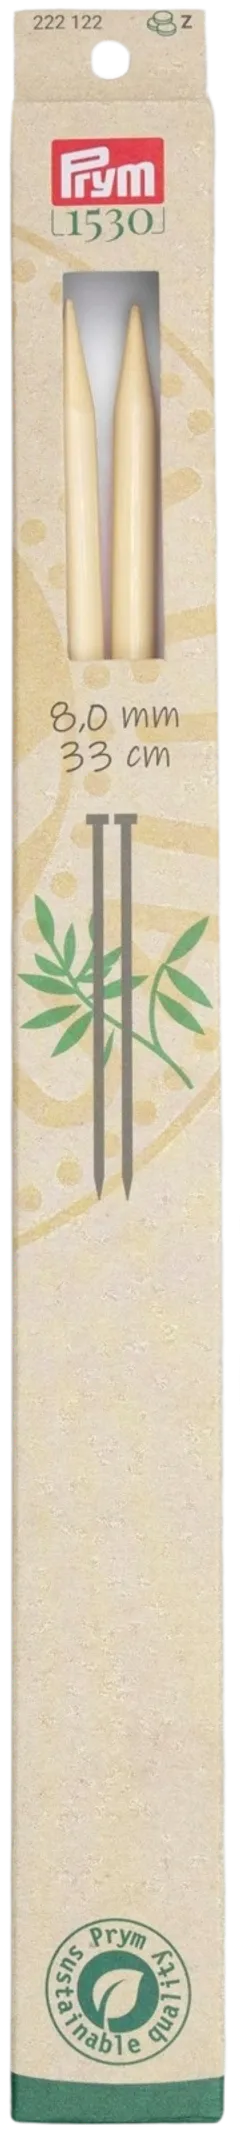 Prym neulepuikko 8,0 33cm bambu - 1